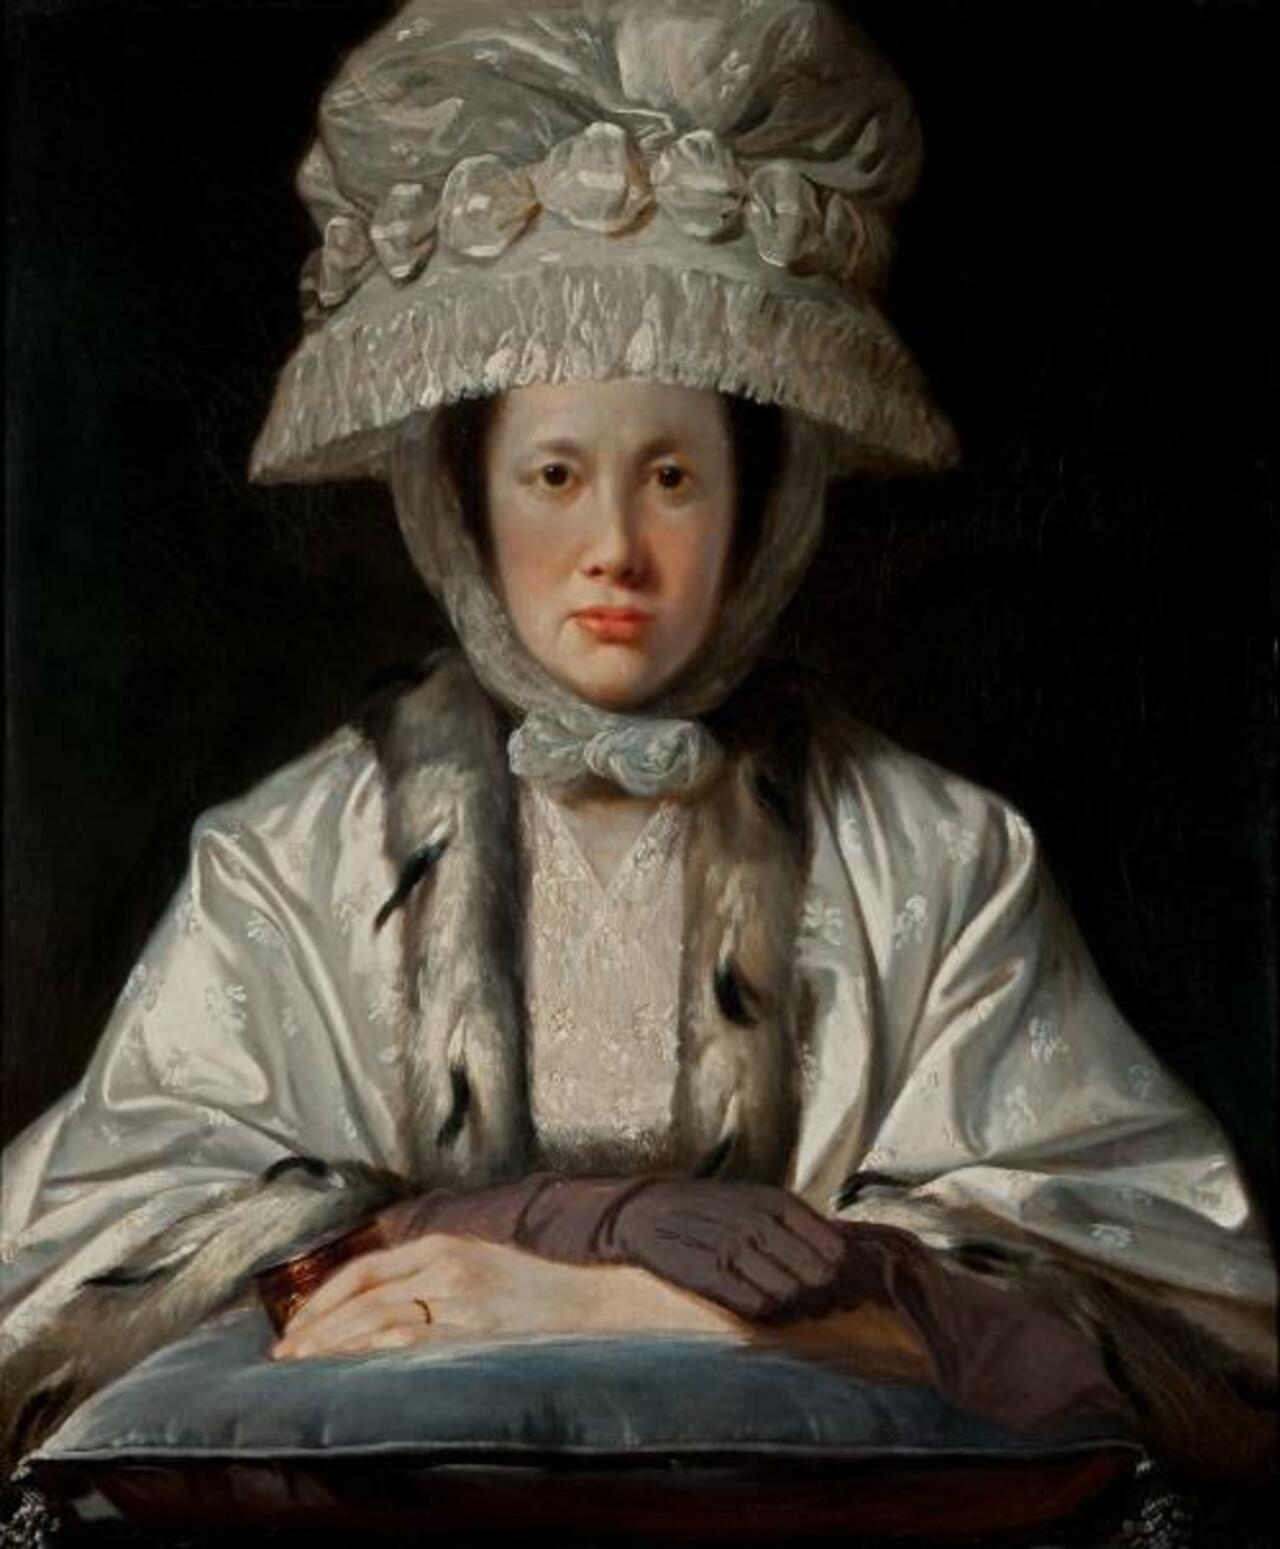 Large (Wikimedia)
Tilly Kettle painted Portrait of Anne... #Art #Arte http://t.co/Jj7GNXIzJk